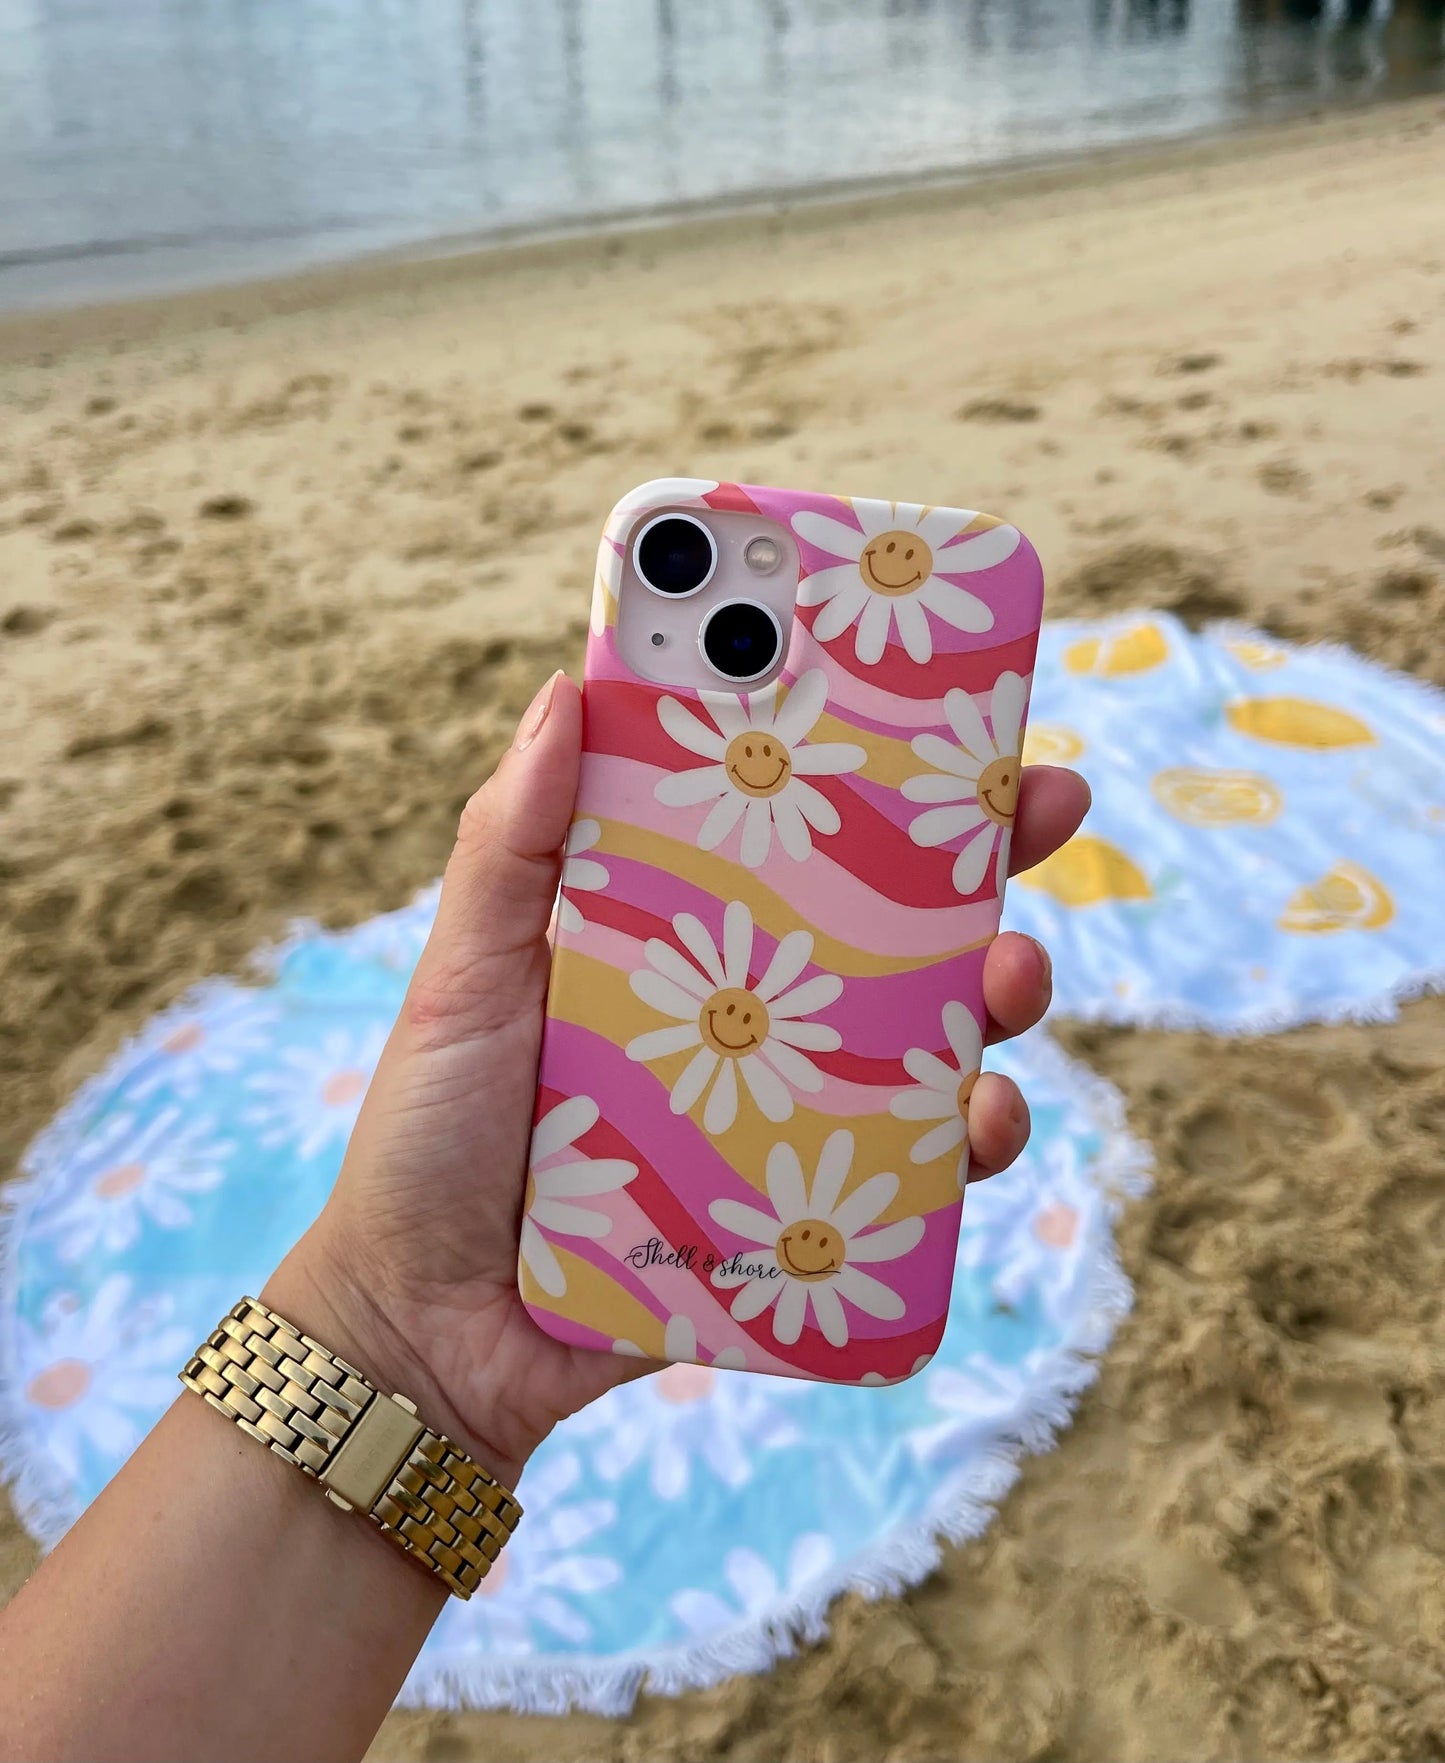 Retro Daisy iPhone Case Shell And Shore